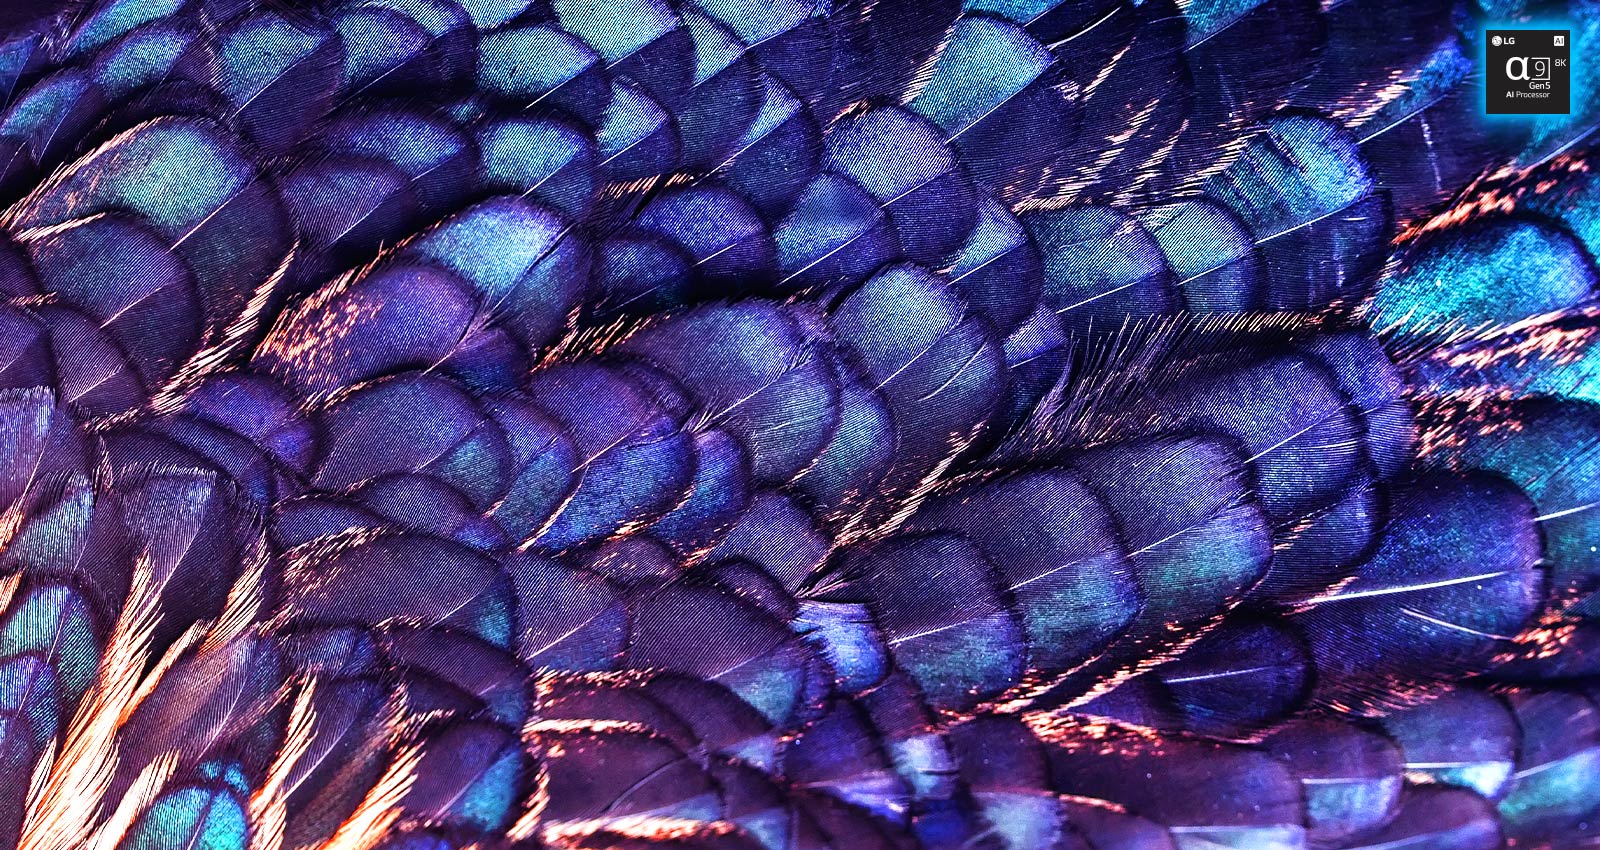 Показано изображение текстур ярких перьев с отливом сказочной птицы сиреневого цвета. Изображение разделено на две части. В верхней части показано более качественное изображение с текстом «Повышение разрешения до 8К с использованием искусственного интеллекта», а в нижней части — более бледное изображение.